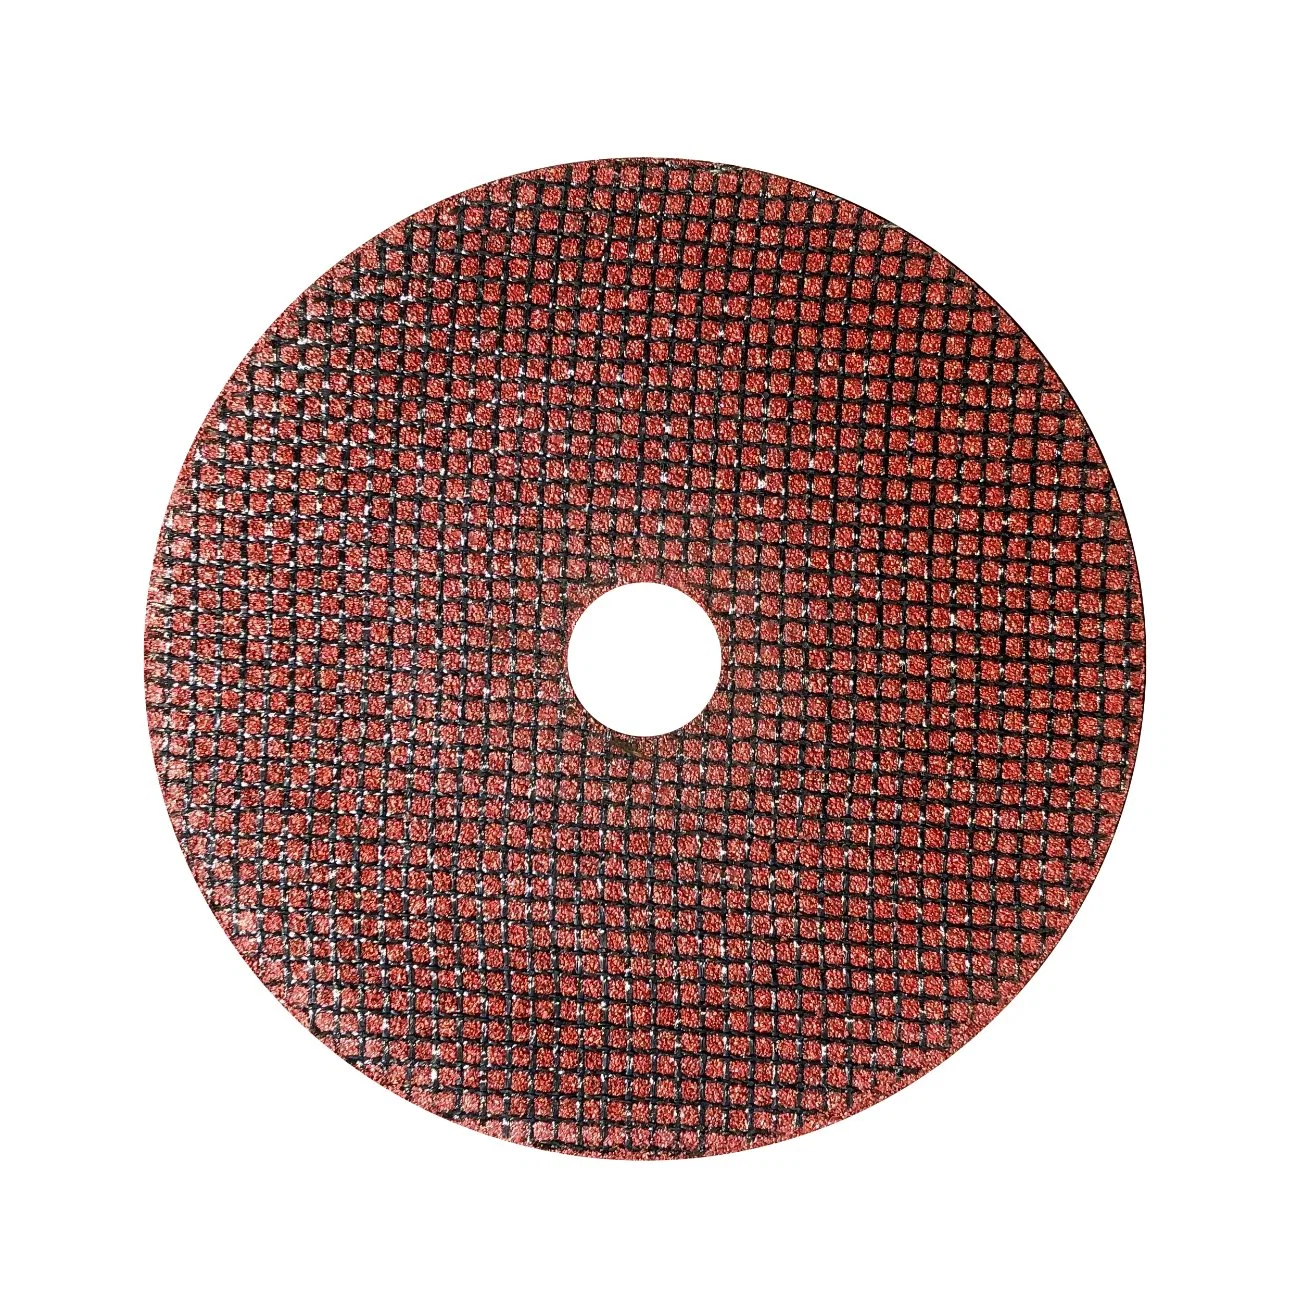 Металлический режущий диск с отверстиями размером 4 дюйма